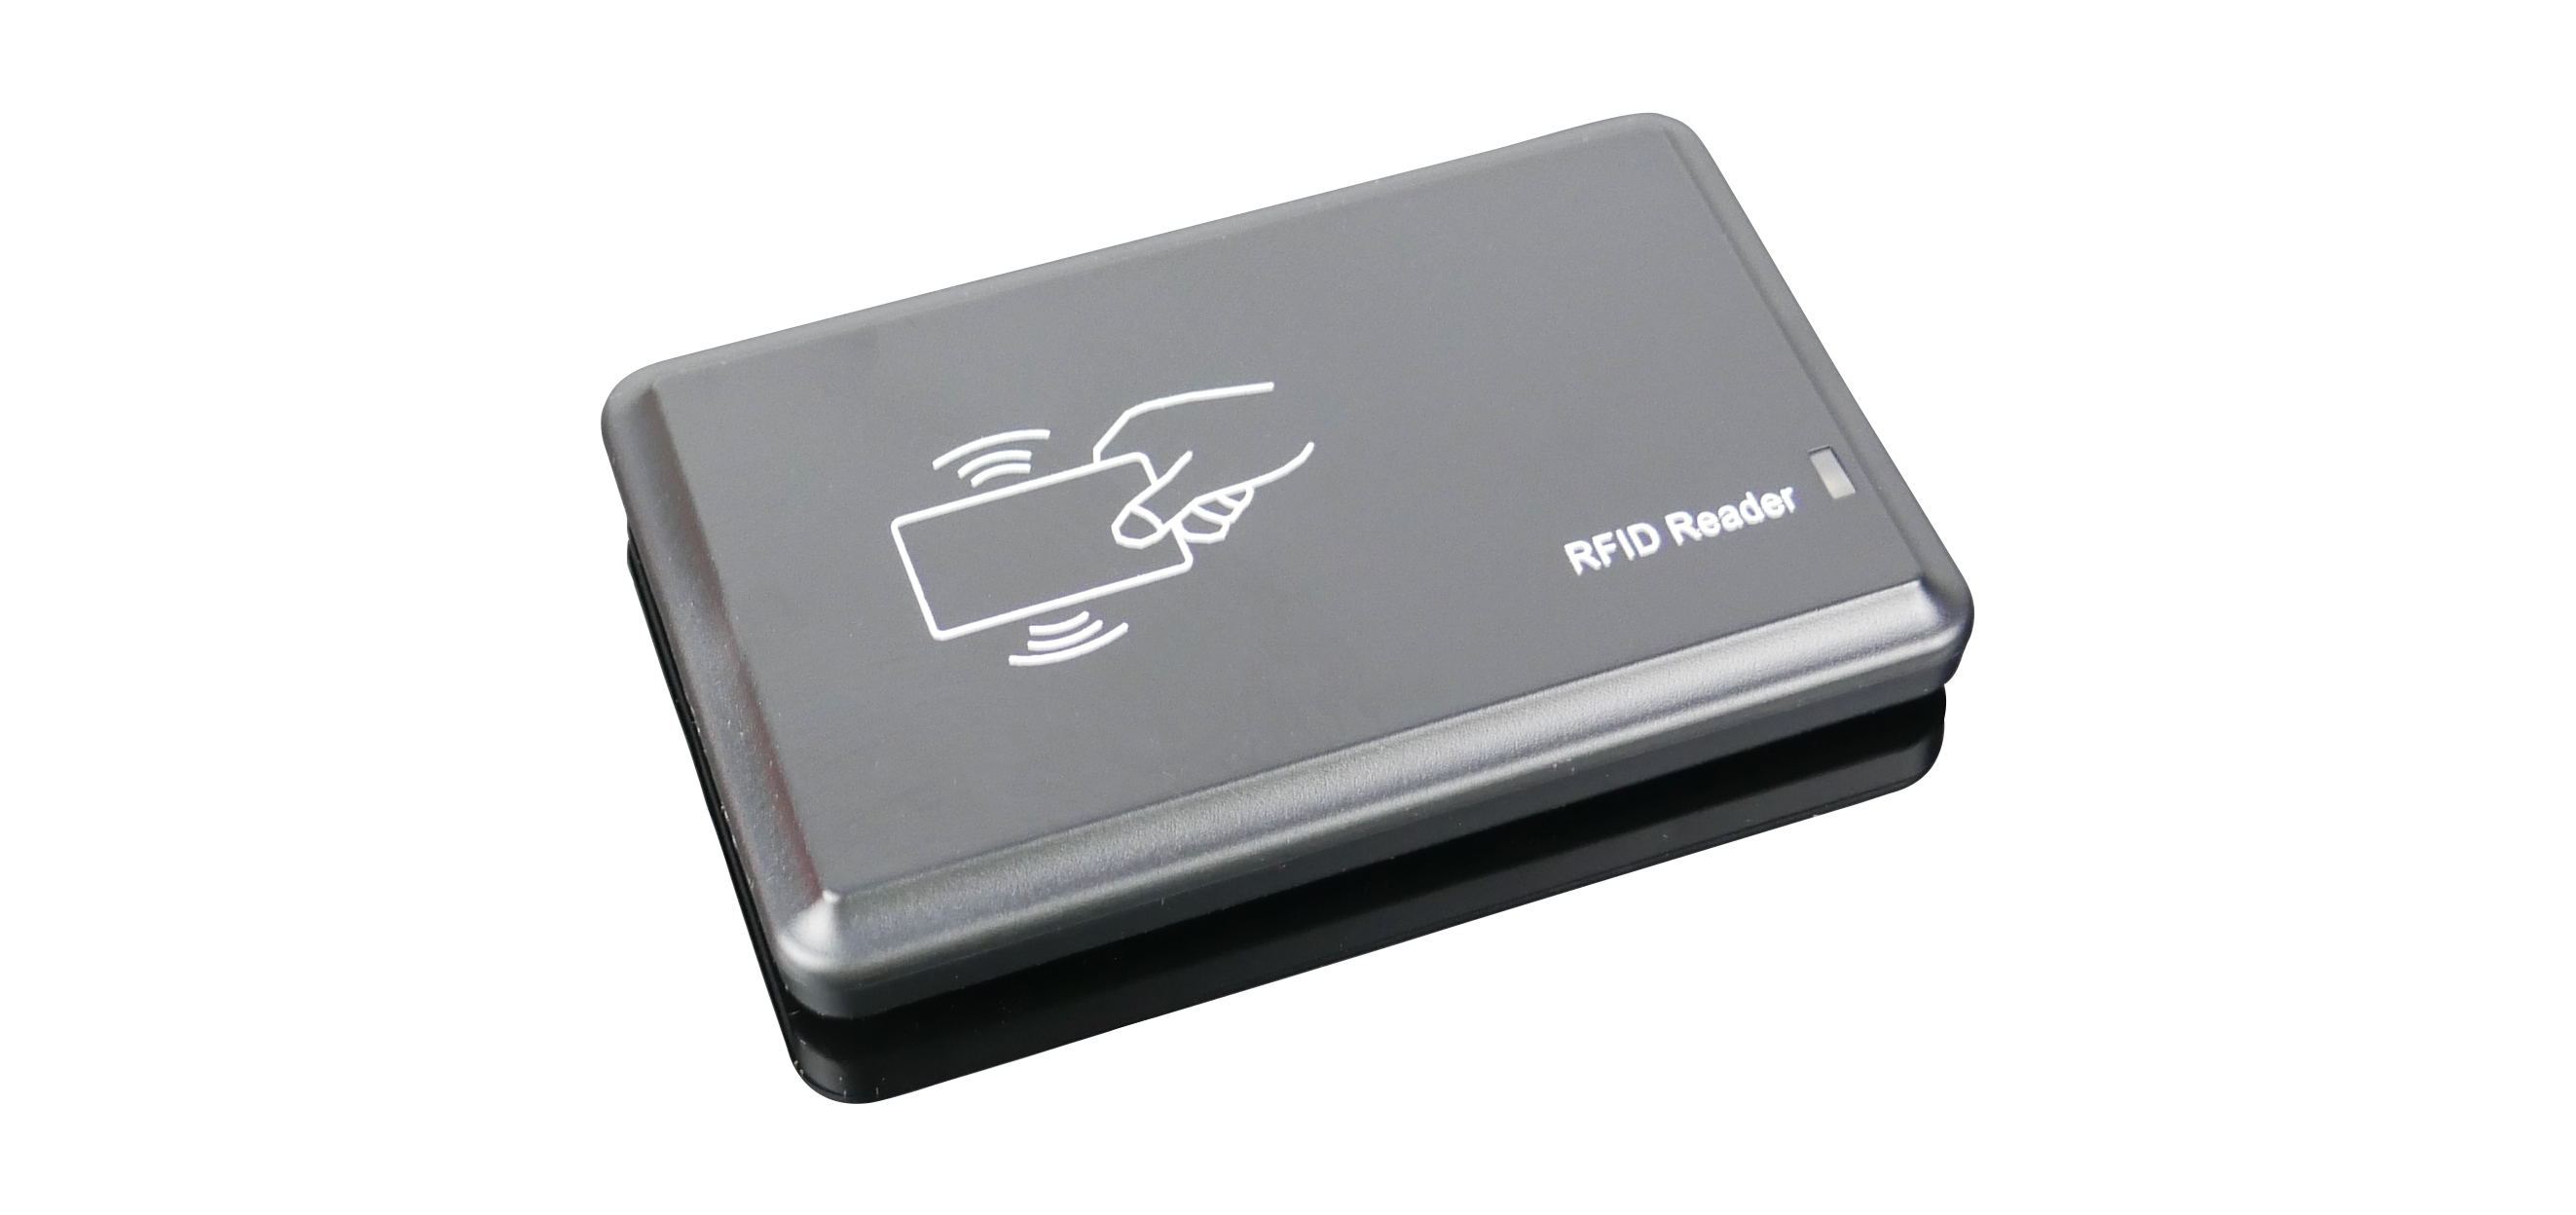 Przewodowy HD-RD20X urządzenie do odczytu tagów RFID